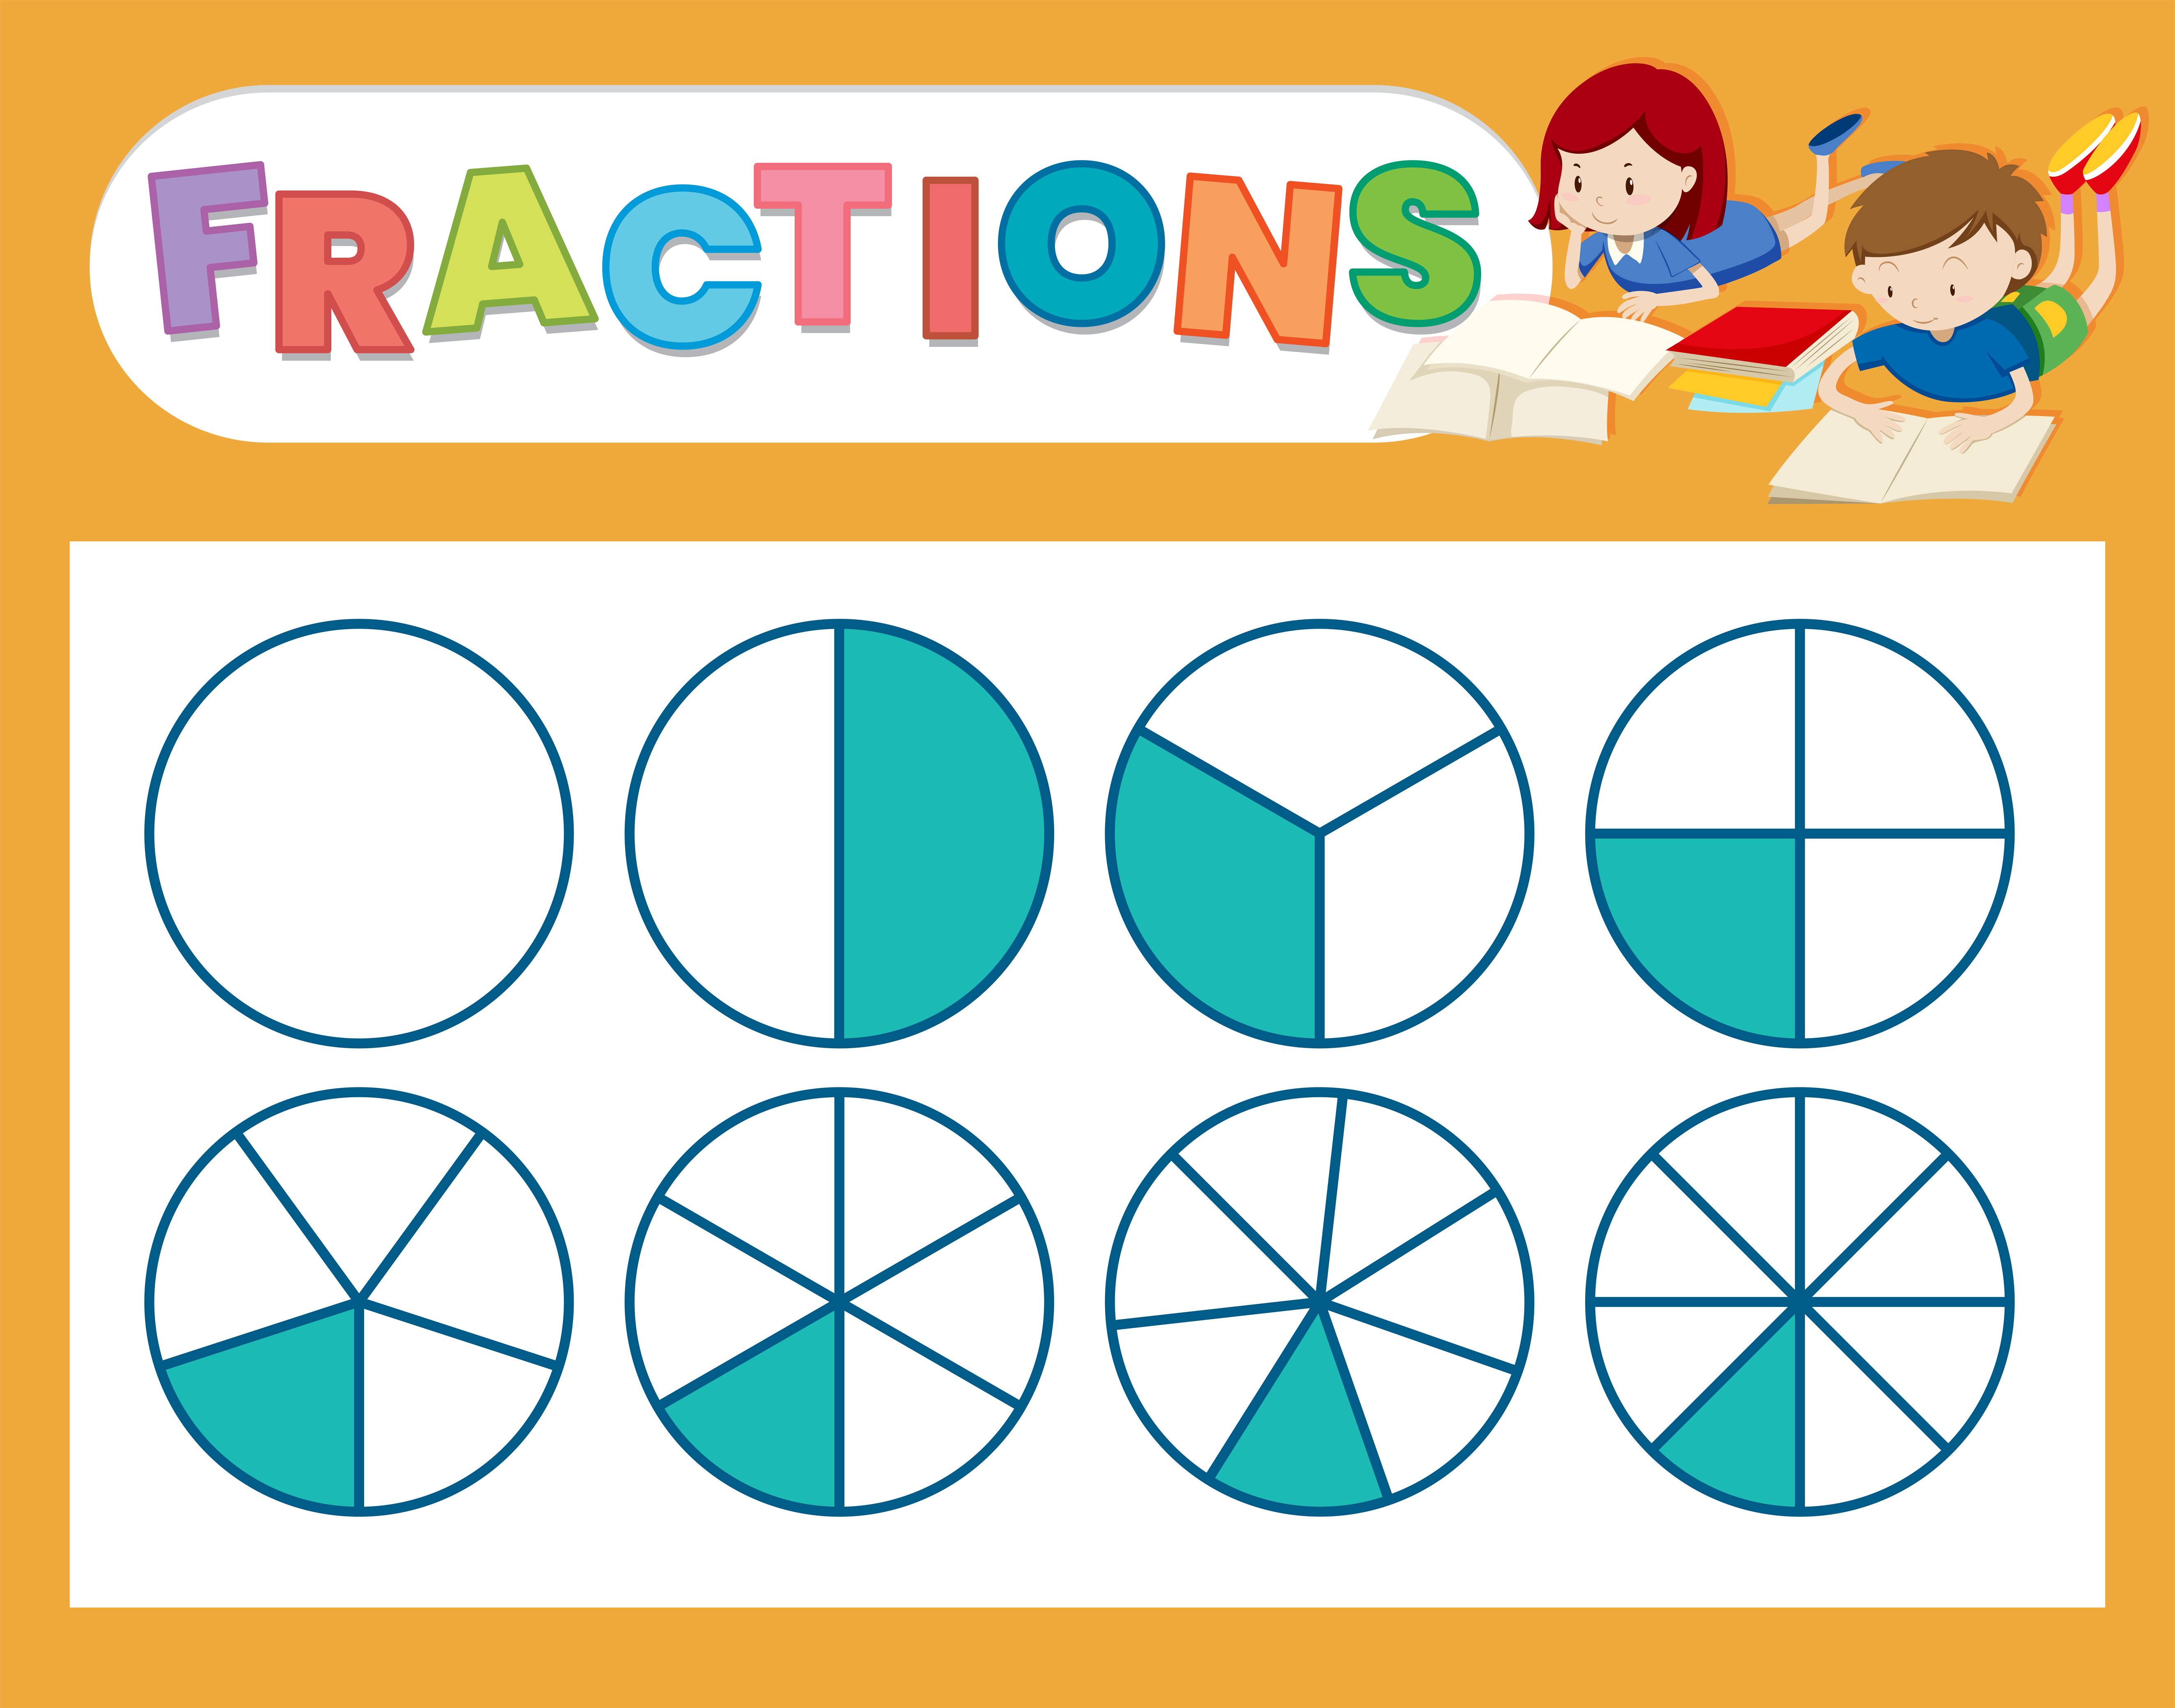 a-cute-fraction-worksheet-372750-vector-art-at-vecteezy